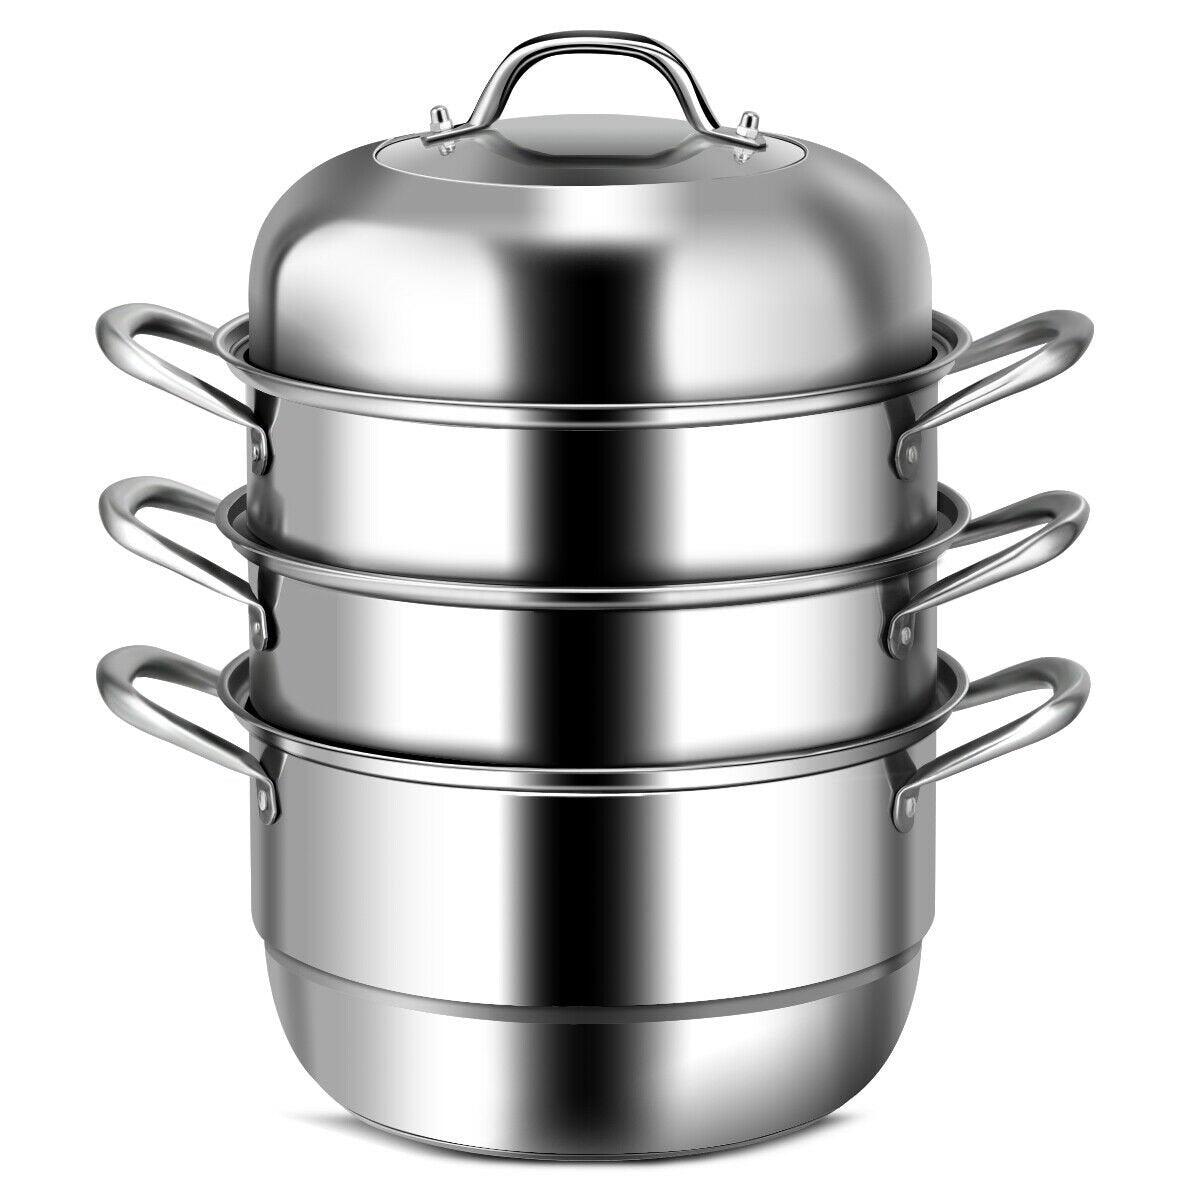 3 Tier Stainless Steel Cookware Pot Saucepot Steamer, Silver